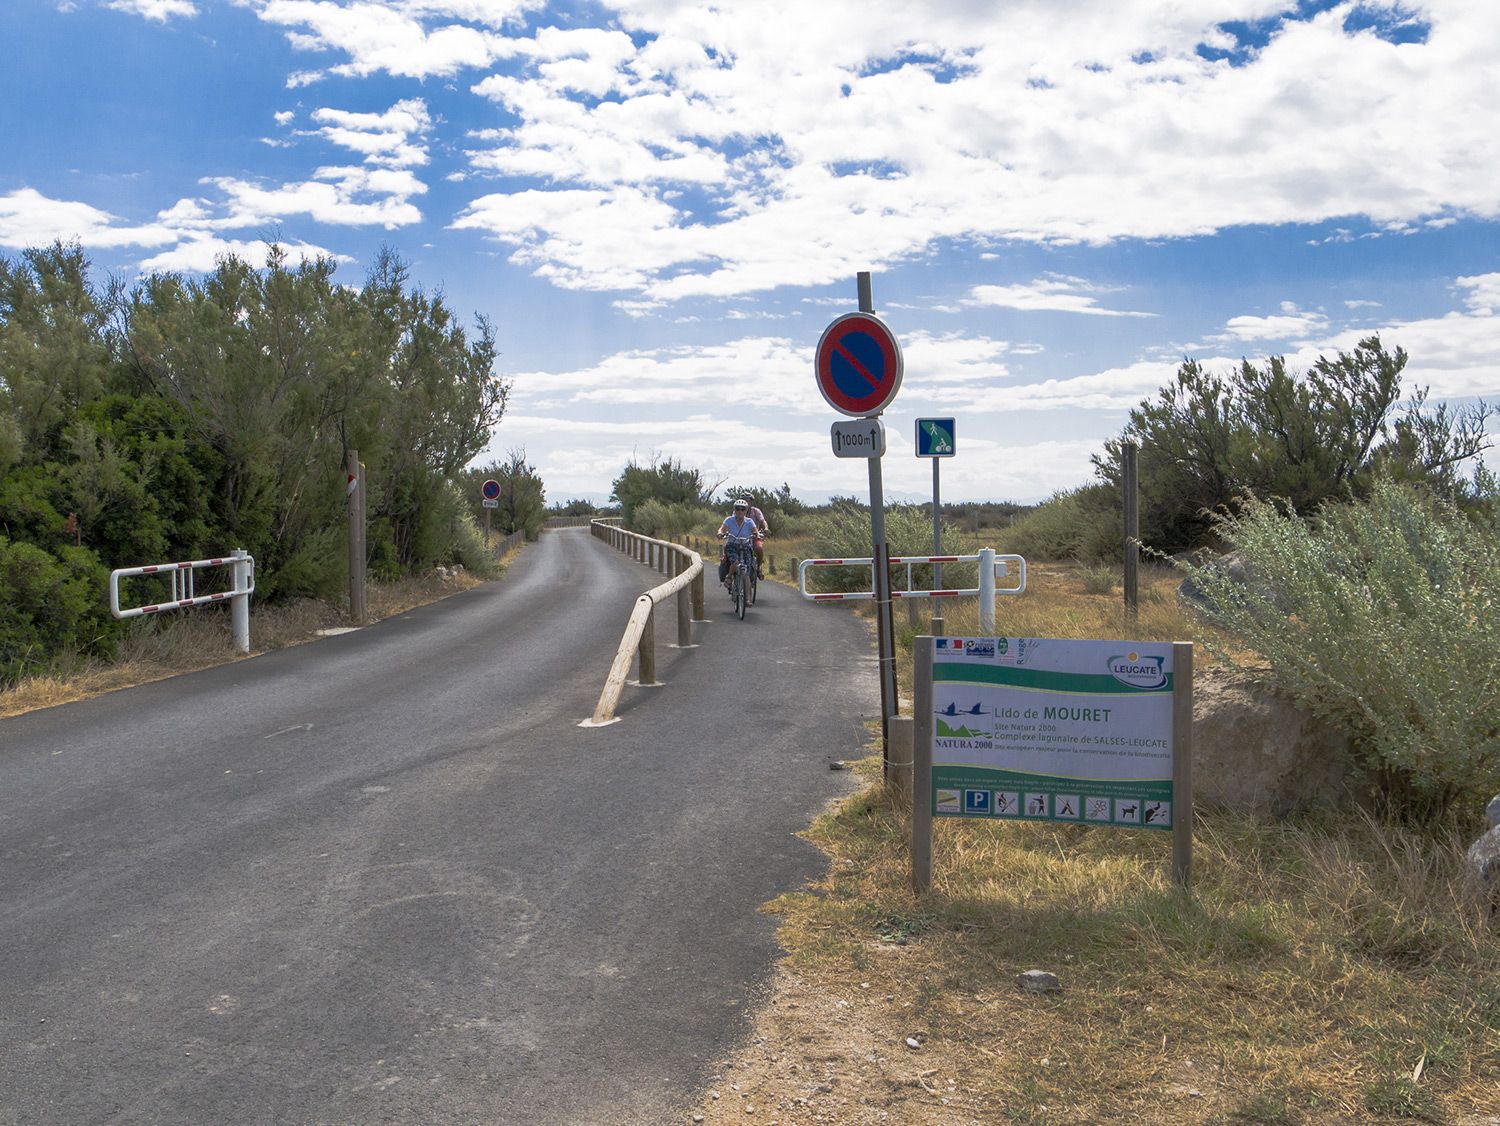 Photo d'une piste cyclable double sens sur la droite d'une route, deux personnes sont à vélo. Au premier plan un panneau indiquant le Lido de Mouret